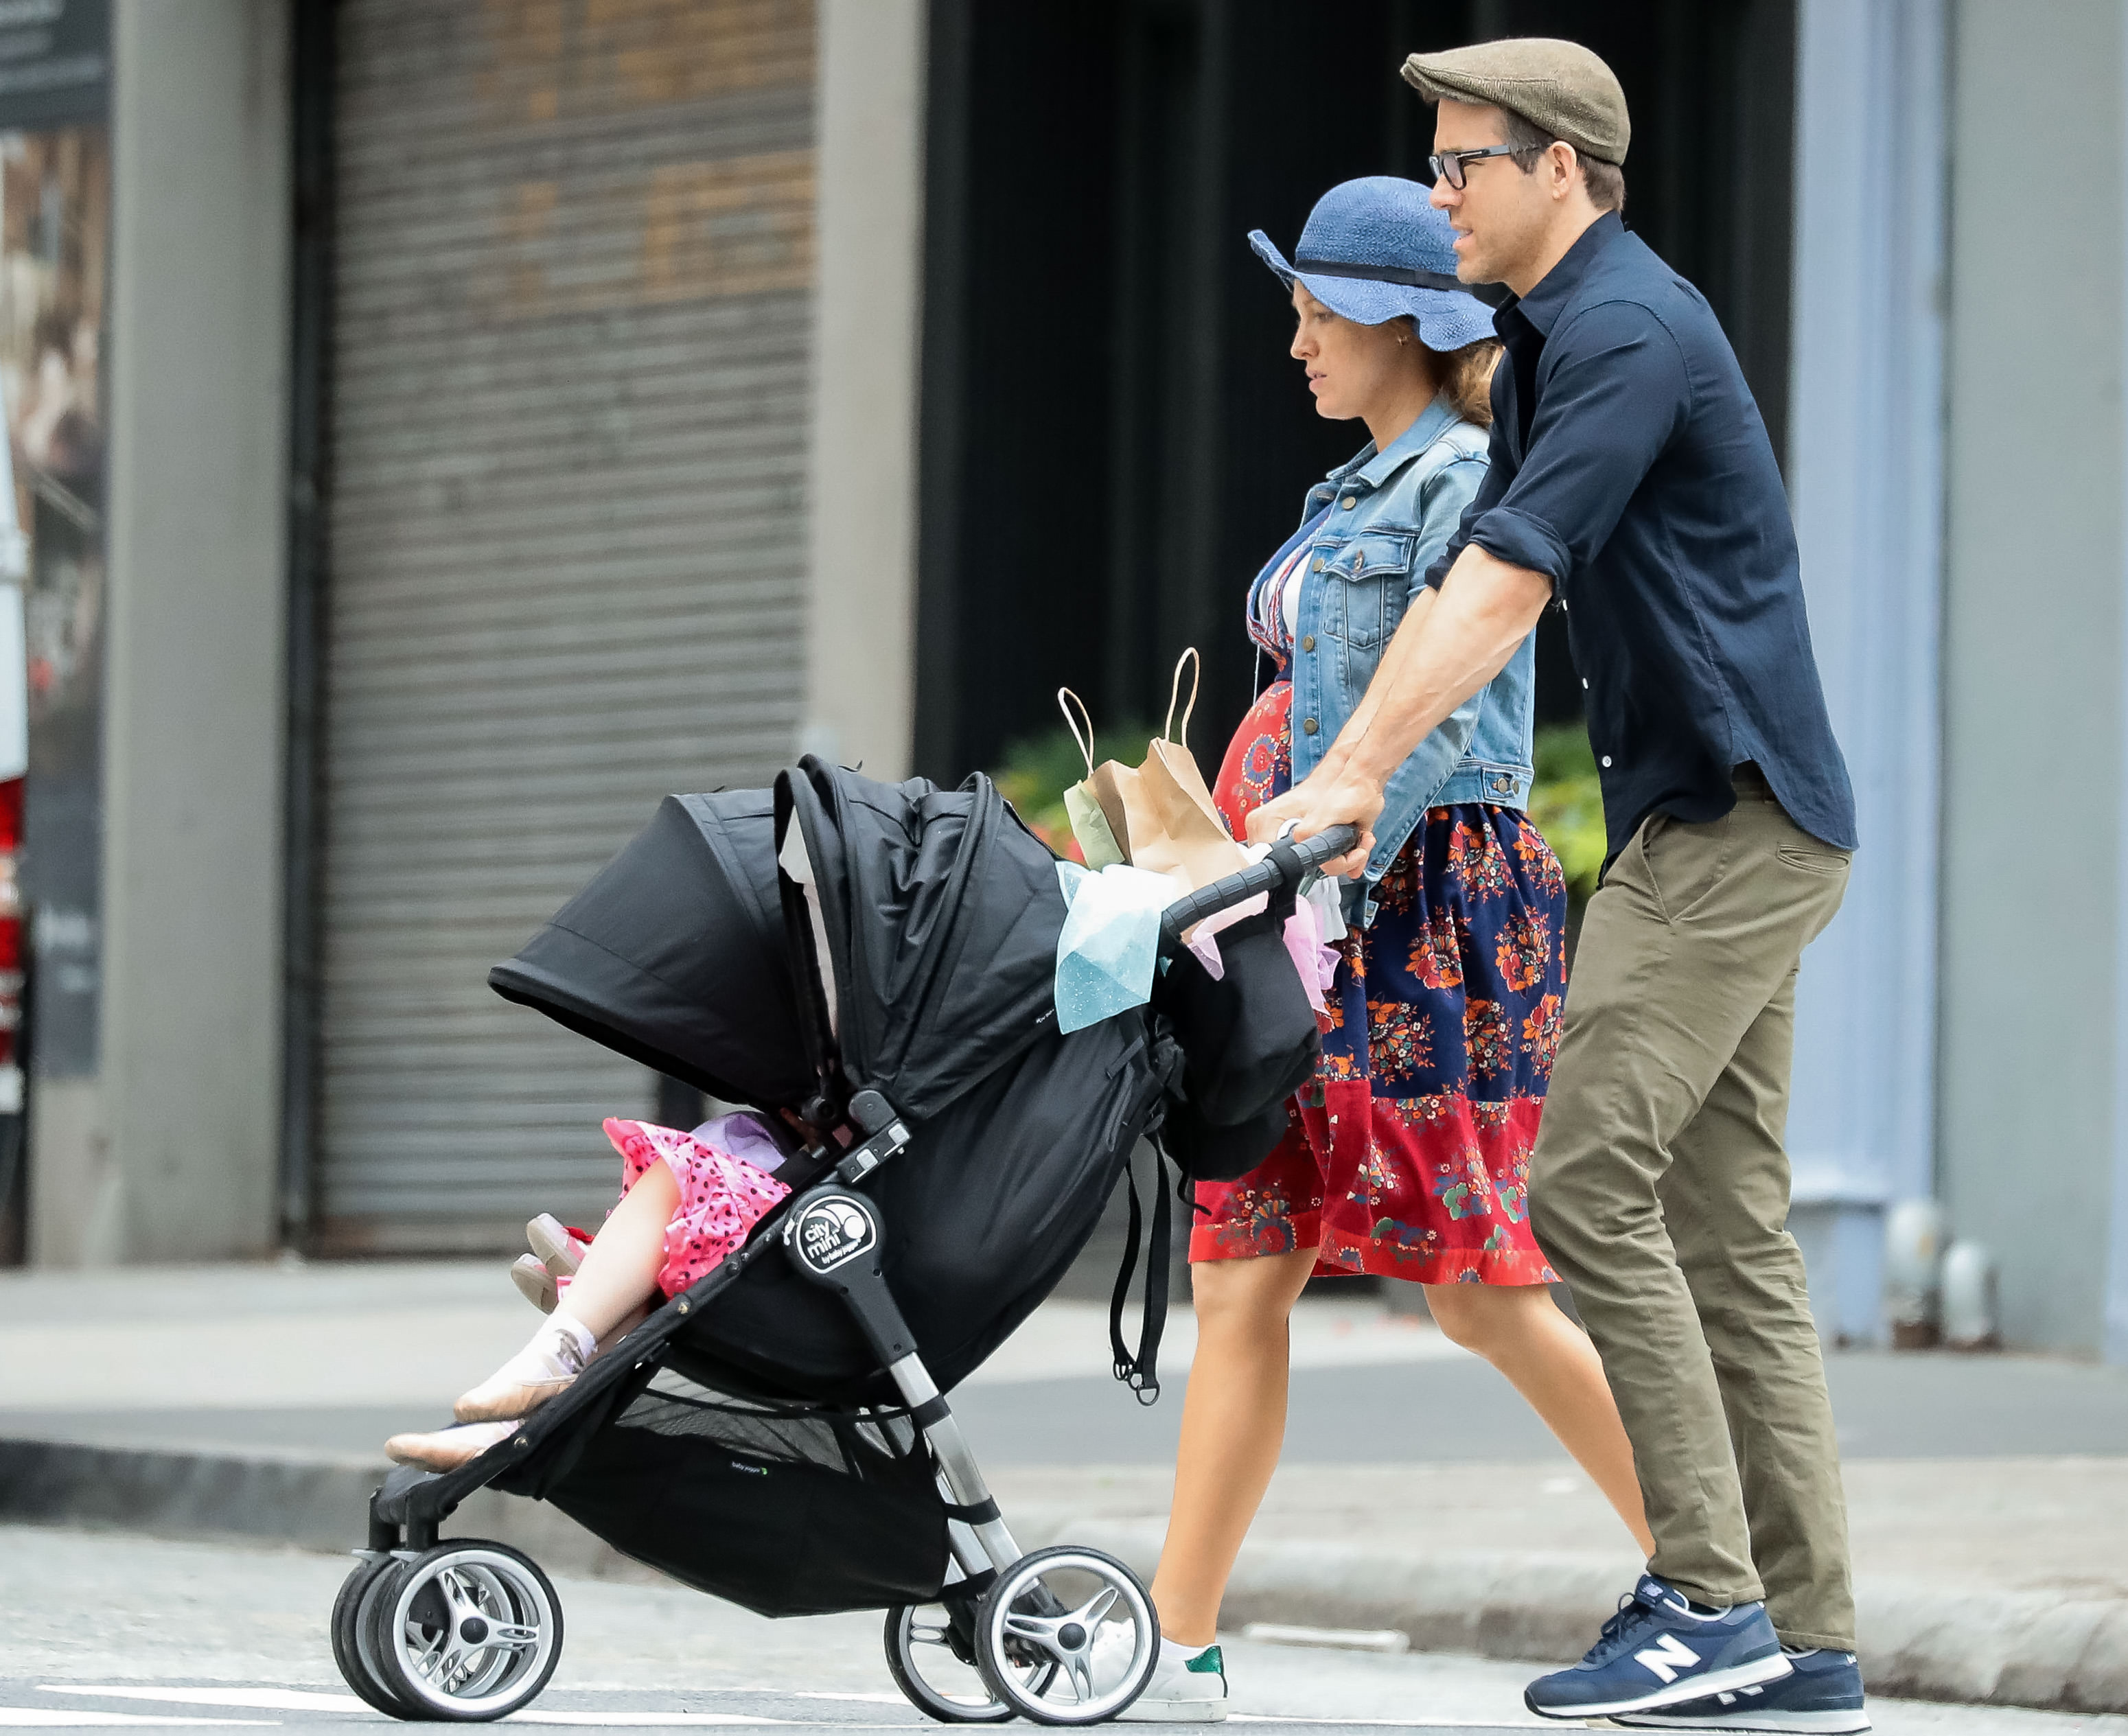 Blake Lively: Η τρυφερή φωτογραφία σε προχωρημένη εγκυμοσύνη με τον Ryan Reynolds! [pics]